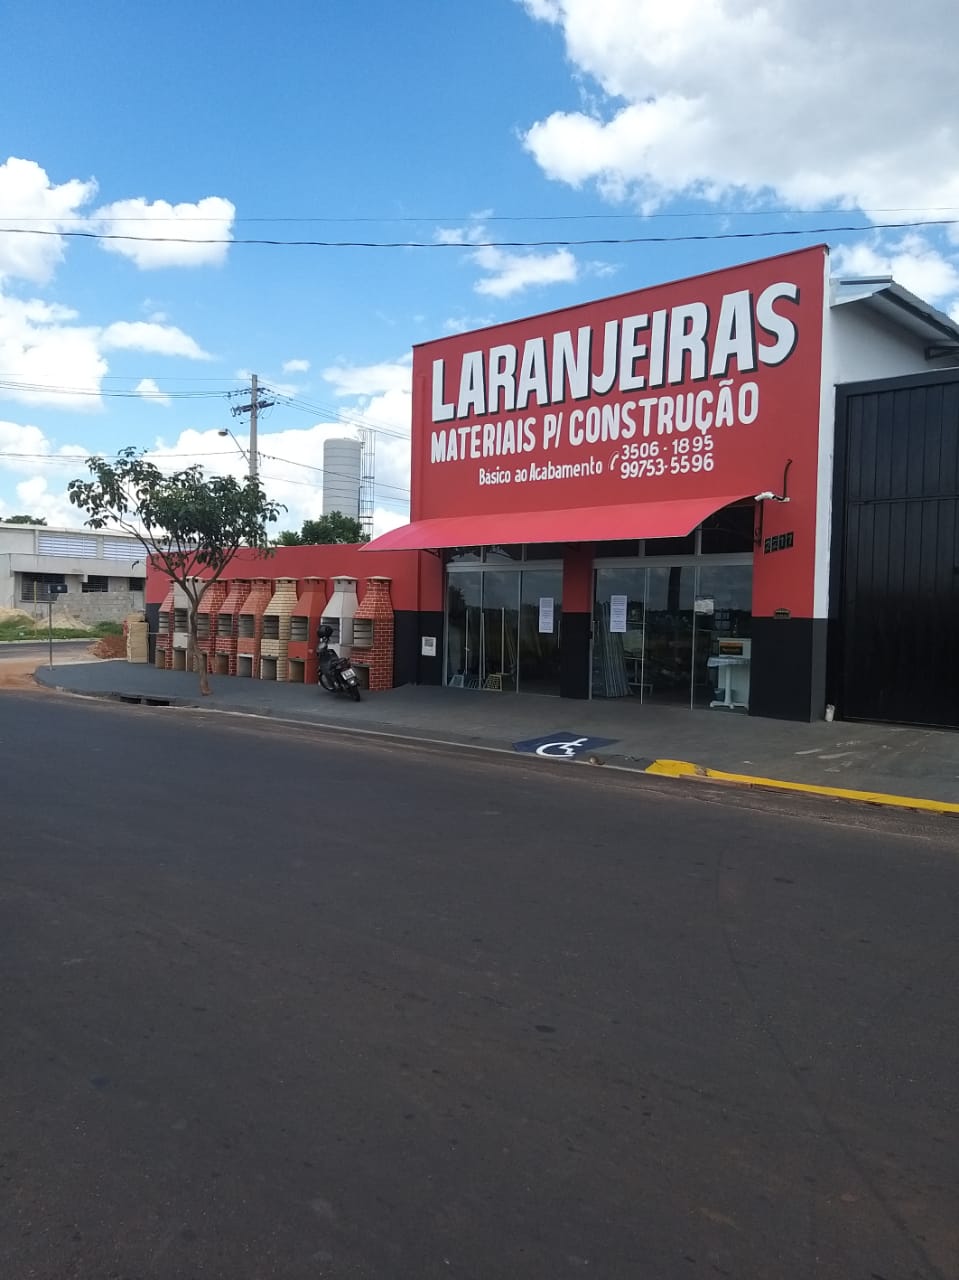 Laranjeiras(3).jpg